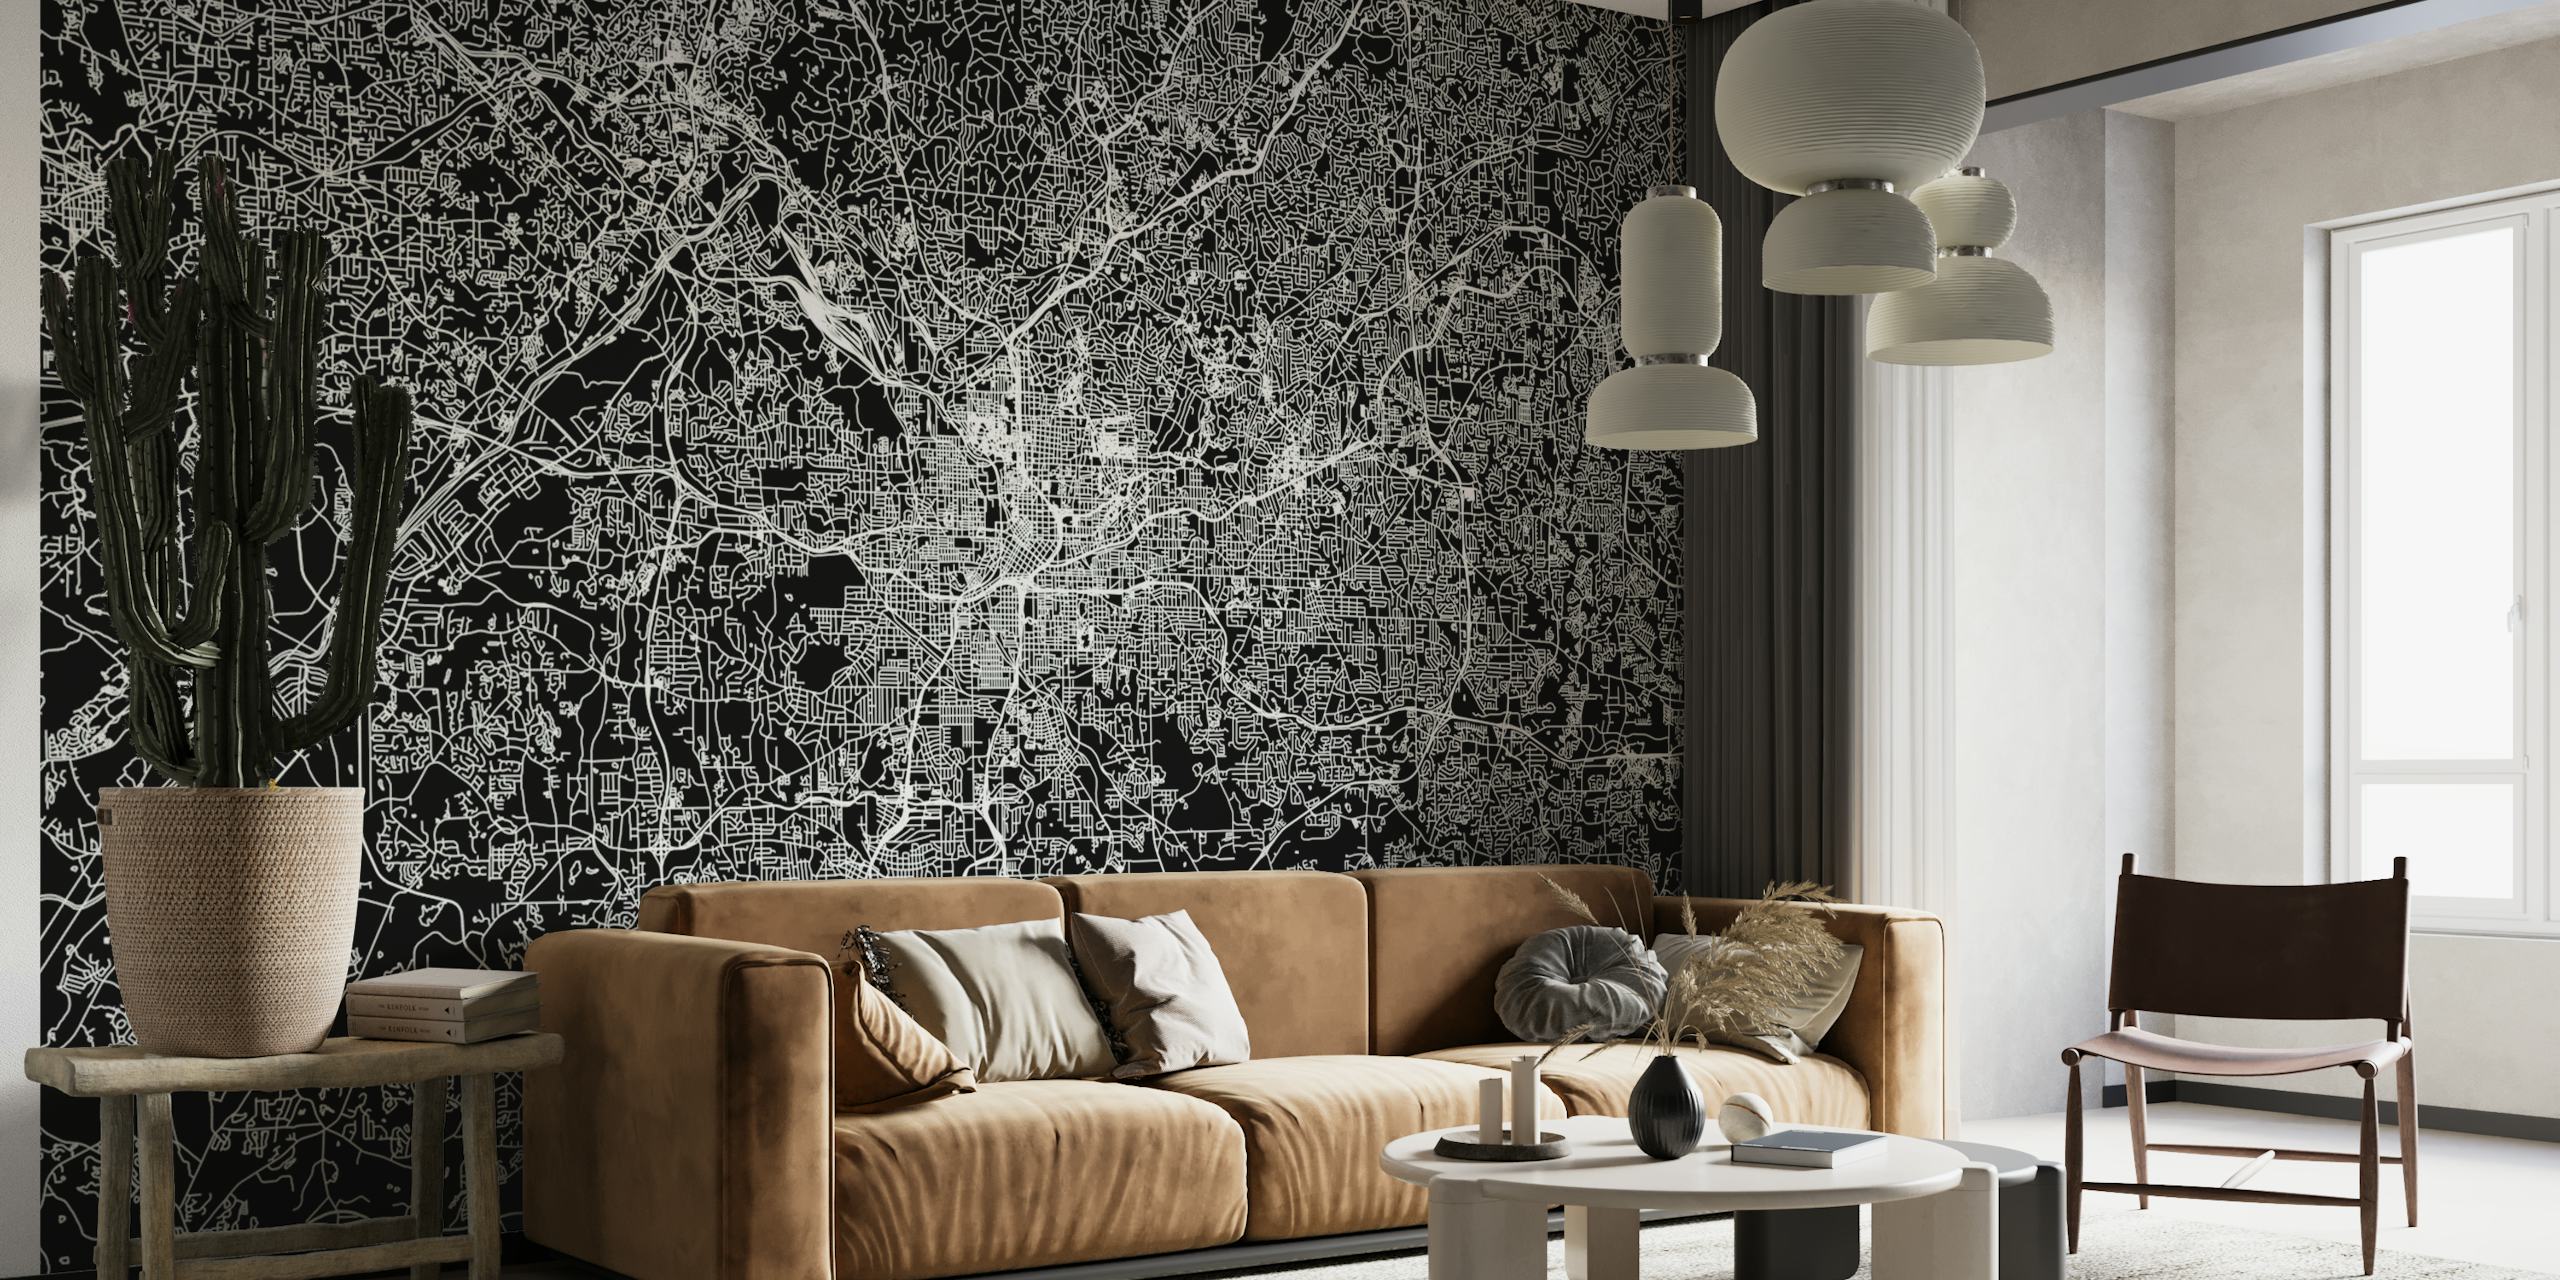 Stylová černobílá nástěnná malba s plánem města Atlanty pro moderní interiér.